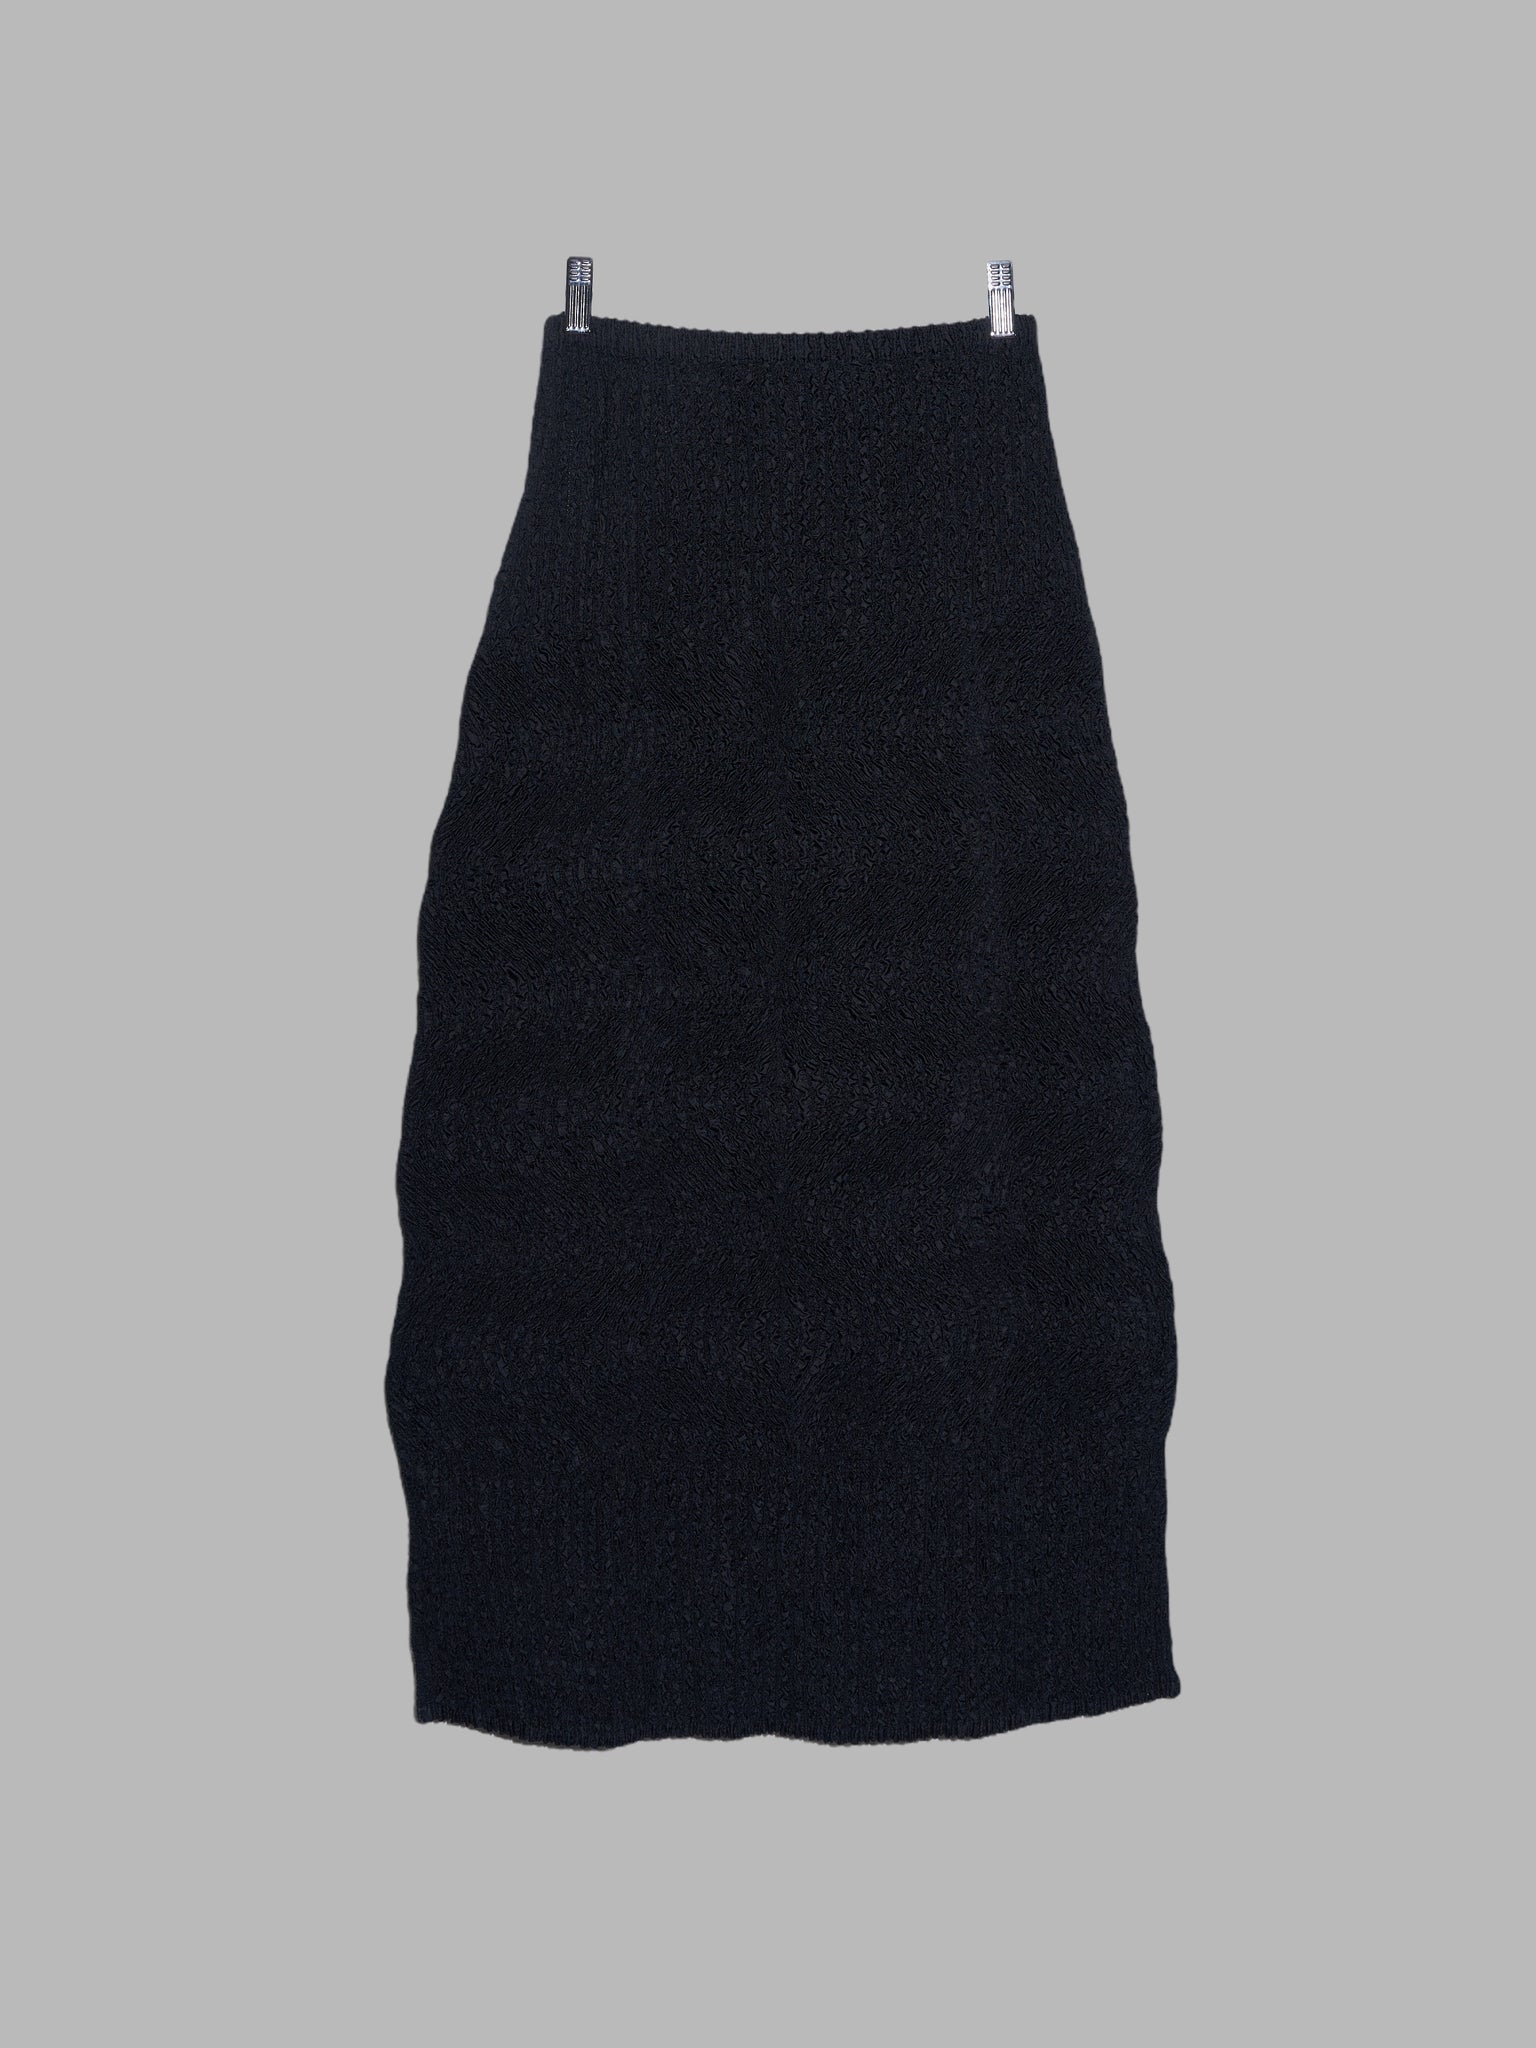 Yoshiki Hishinuma Peplum black wrinkled polyester cardigan and skirt set - S M